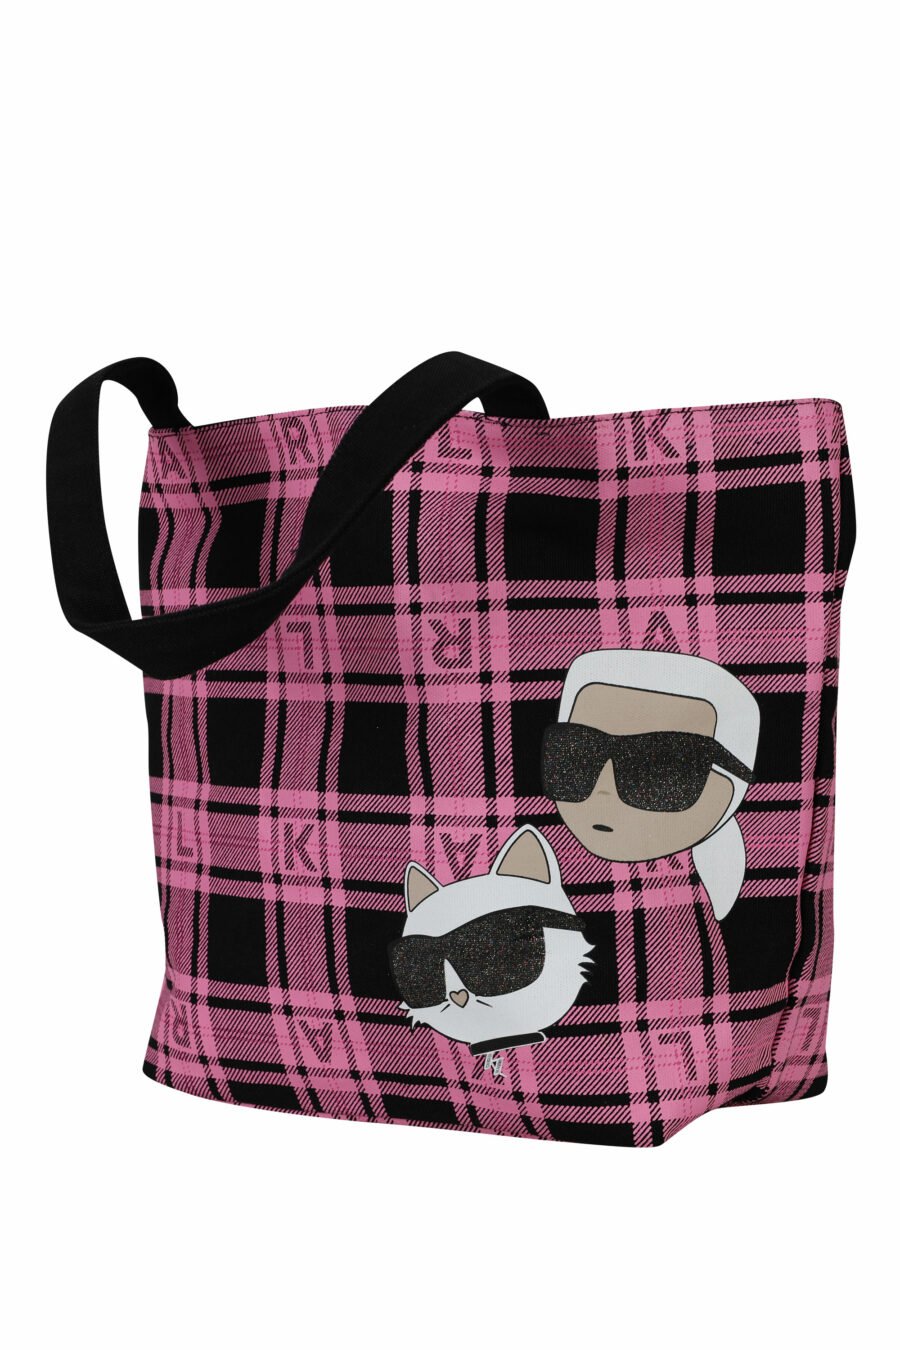 Tote bag reversible negro y rosa con maxilogo "choupette y karl" - 8720744676225 1